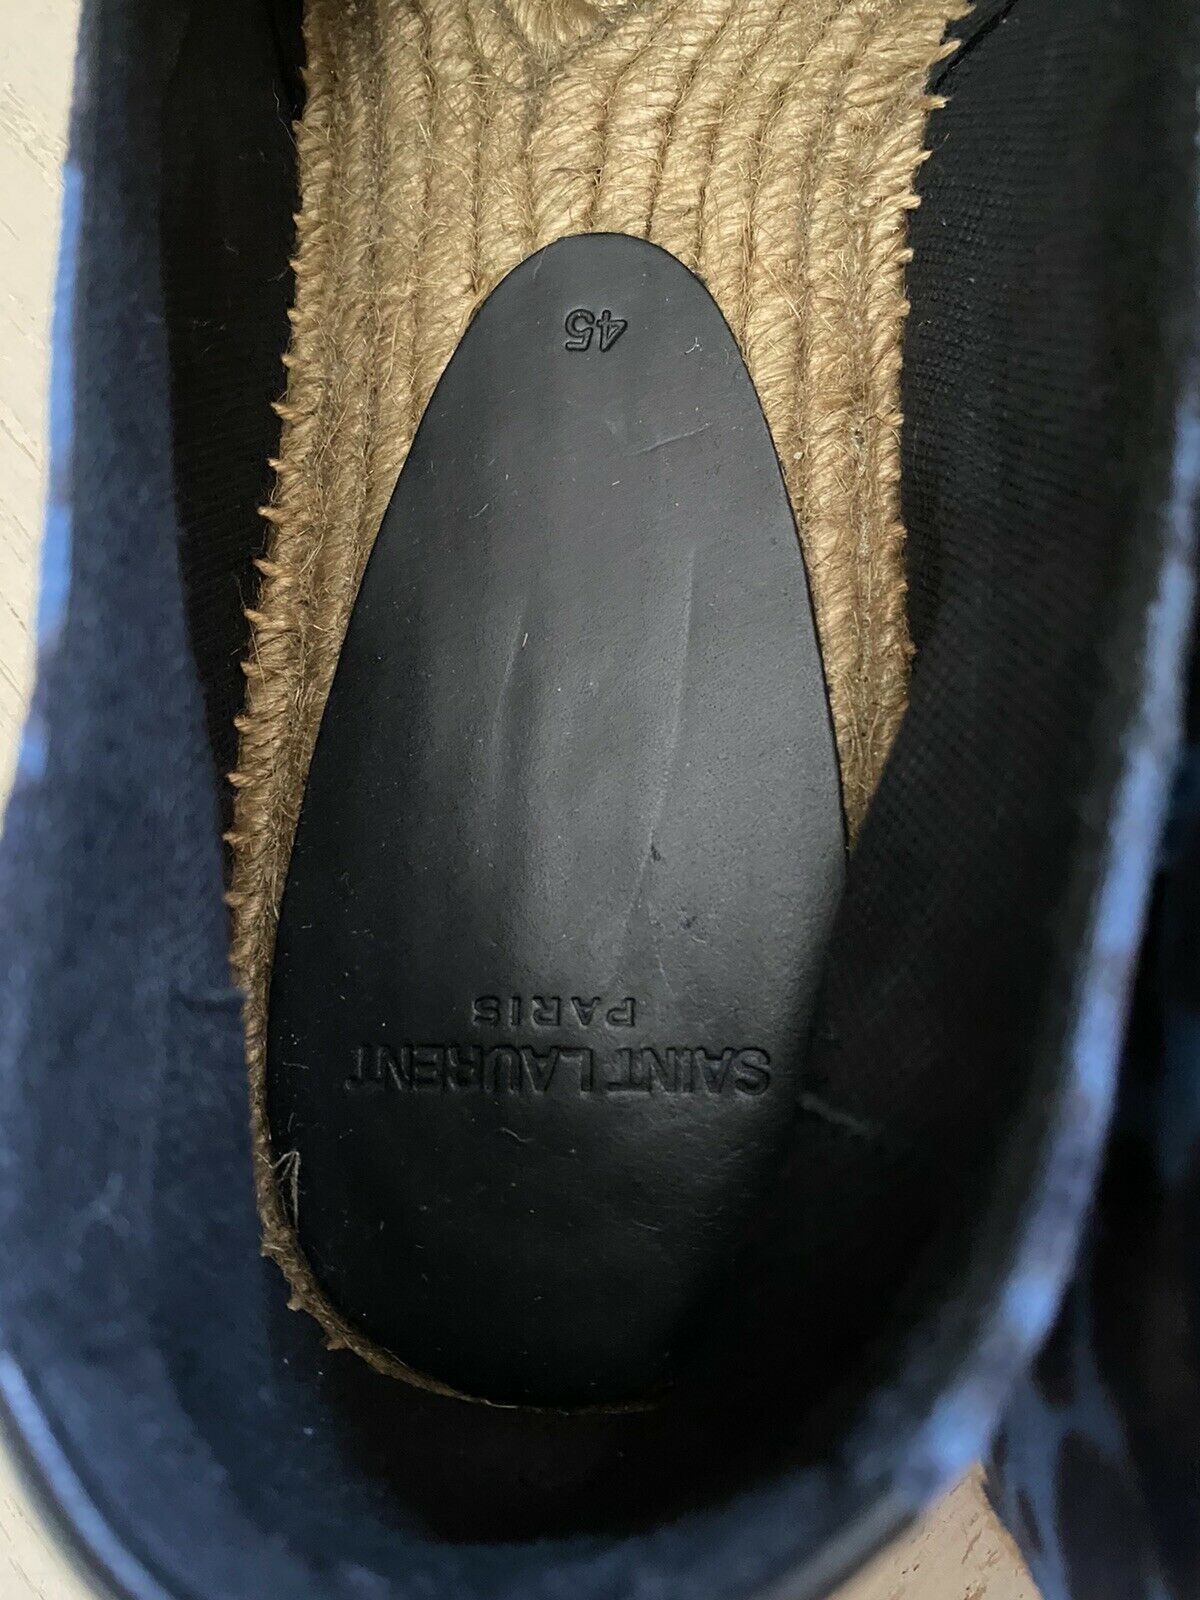 New Saint Laurent Men’s Suede Vert Leopard Espadrille Shoes Blue 12 US/45 Eu